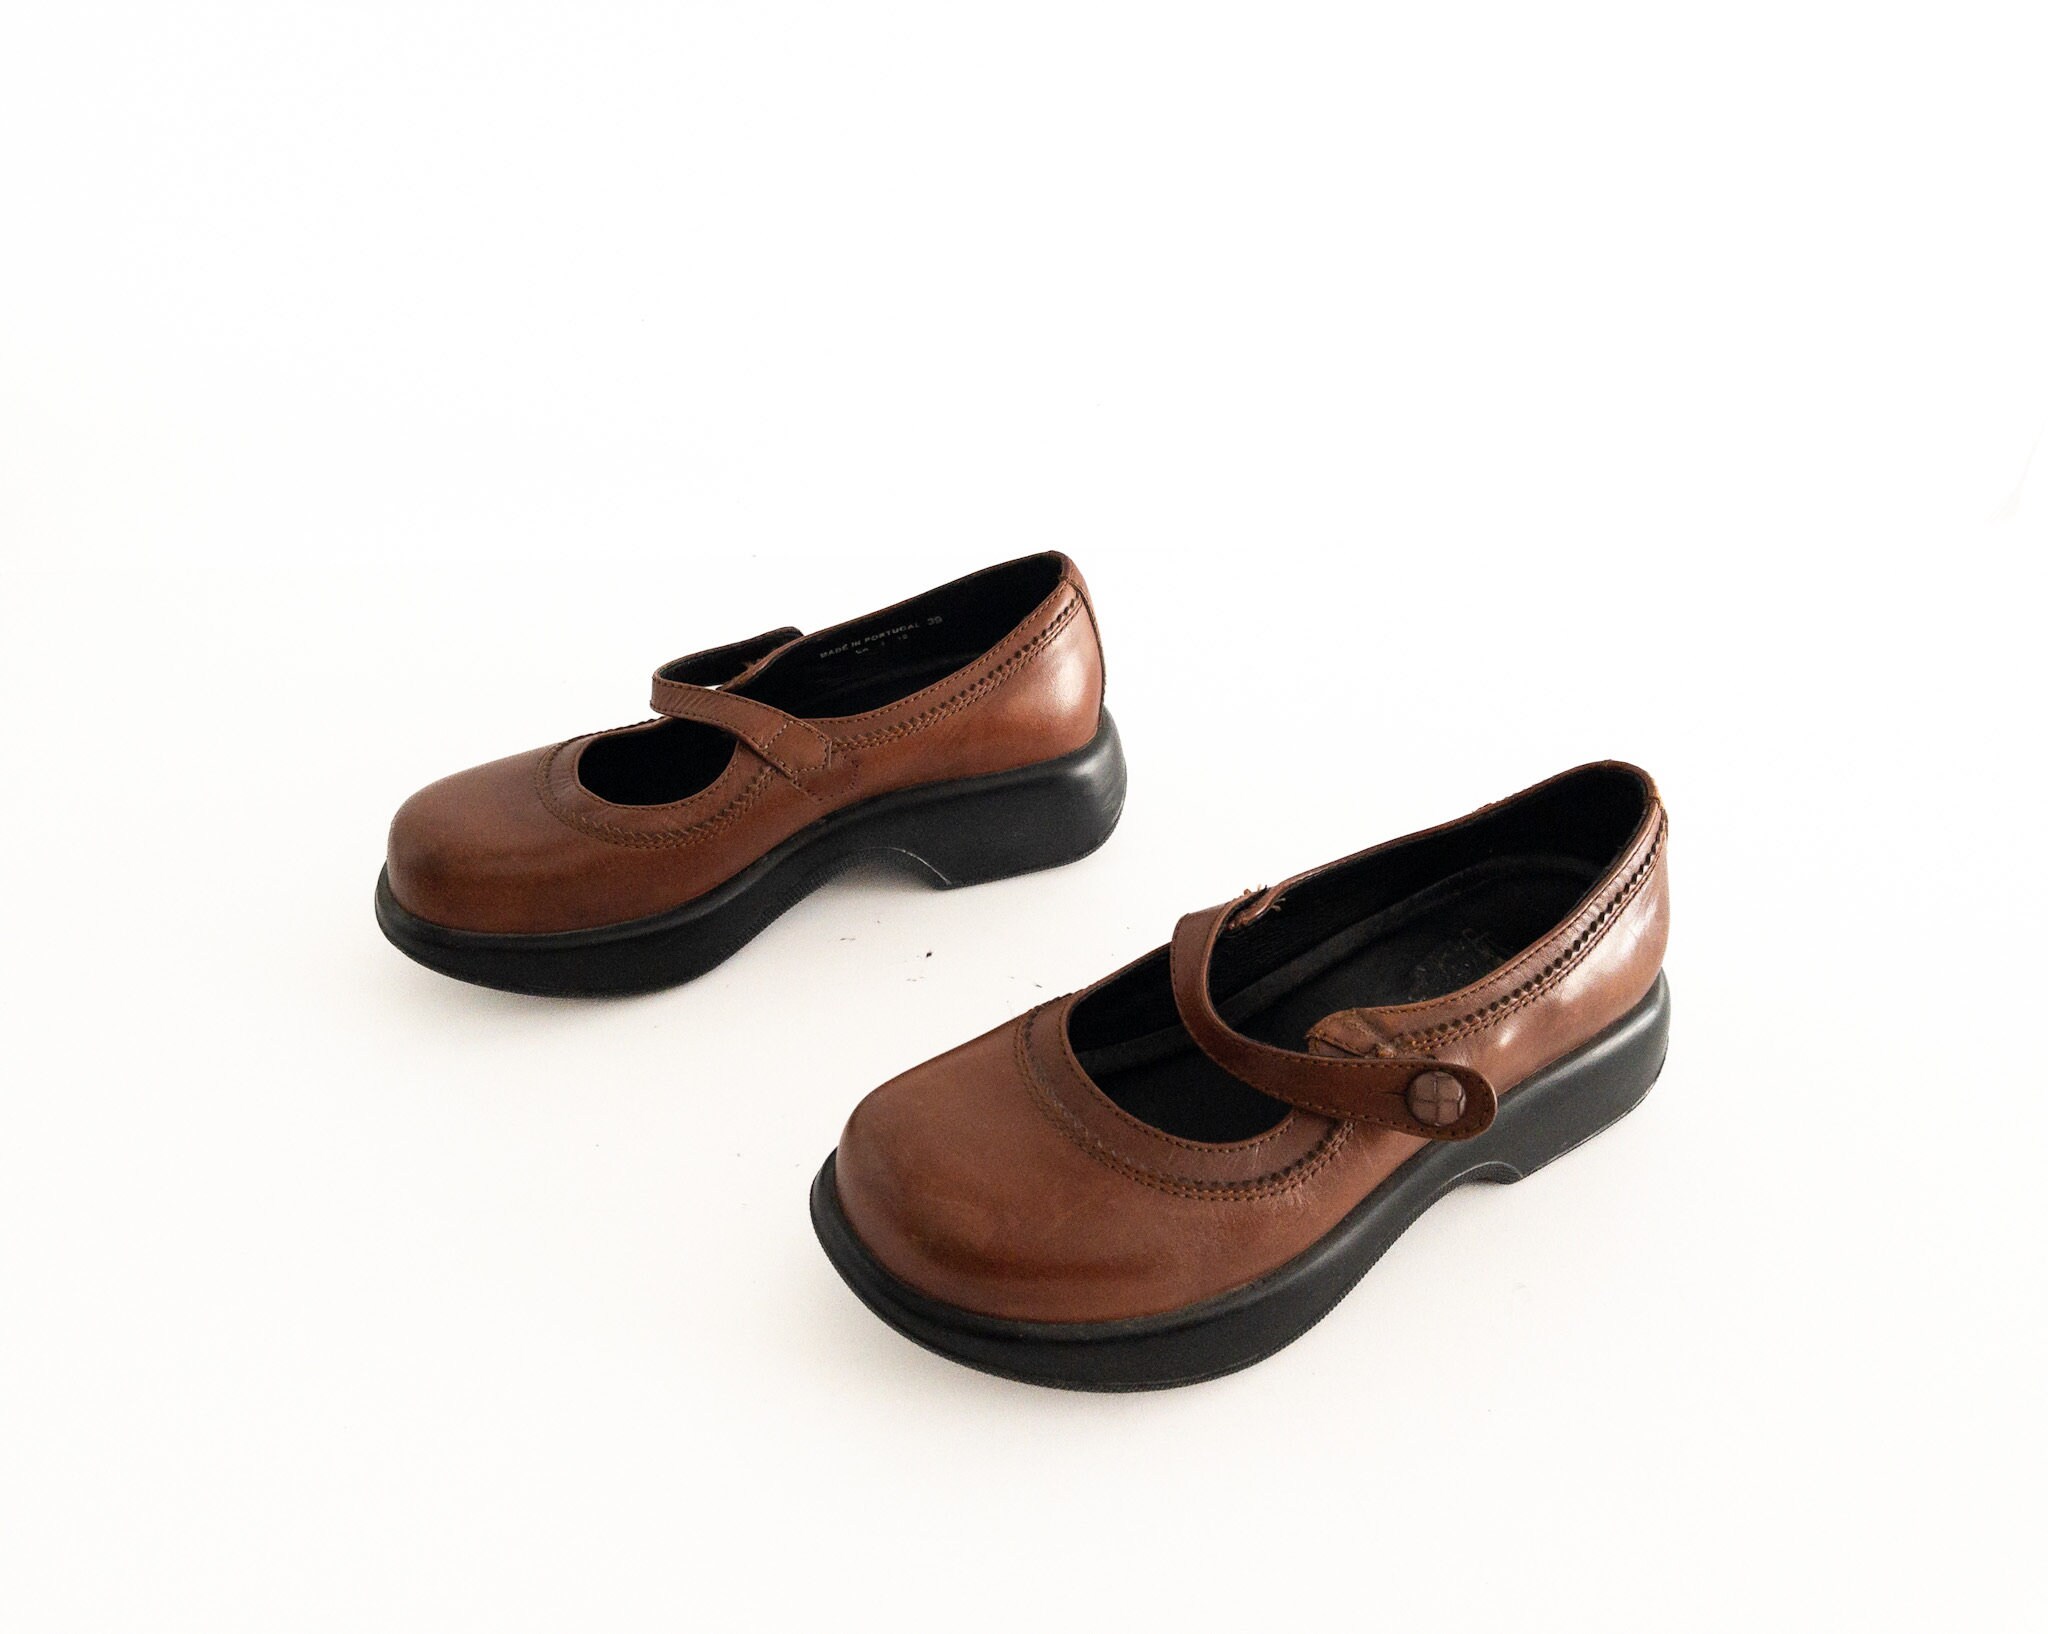 Schoenen Meisjesschoenen Mary Janes 90s brown leather mary jane platforms size 13 